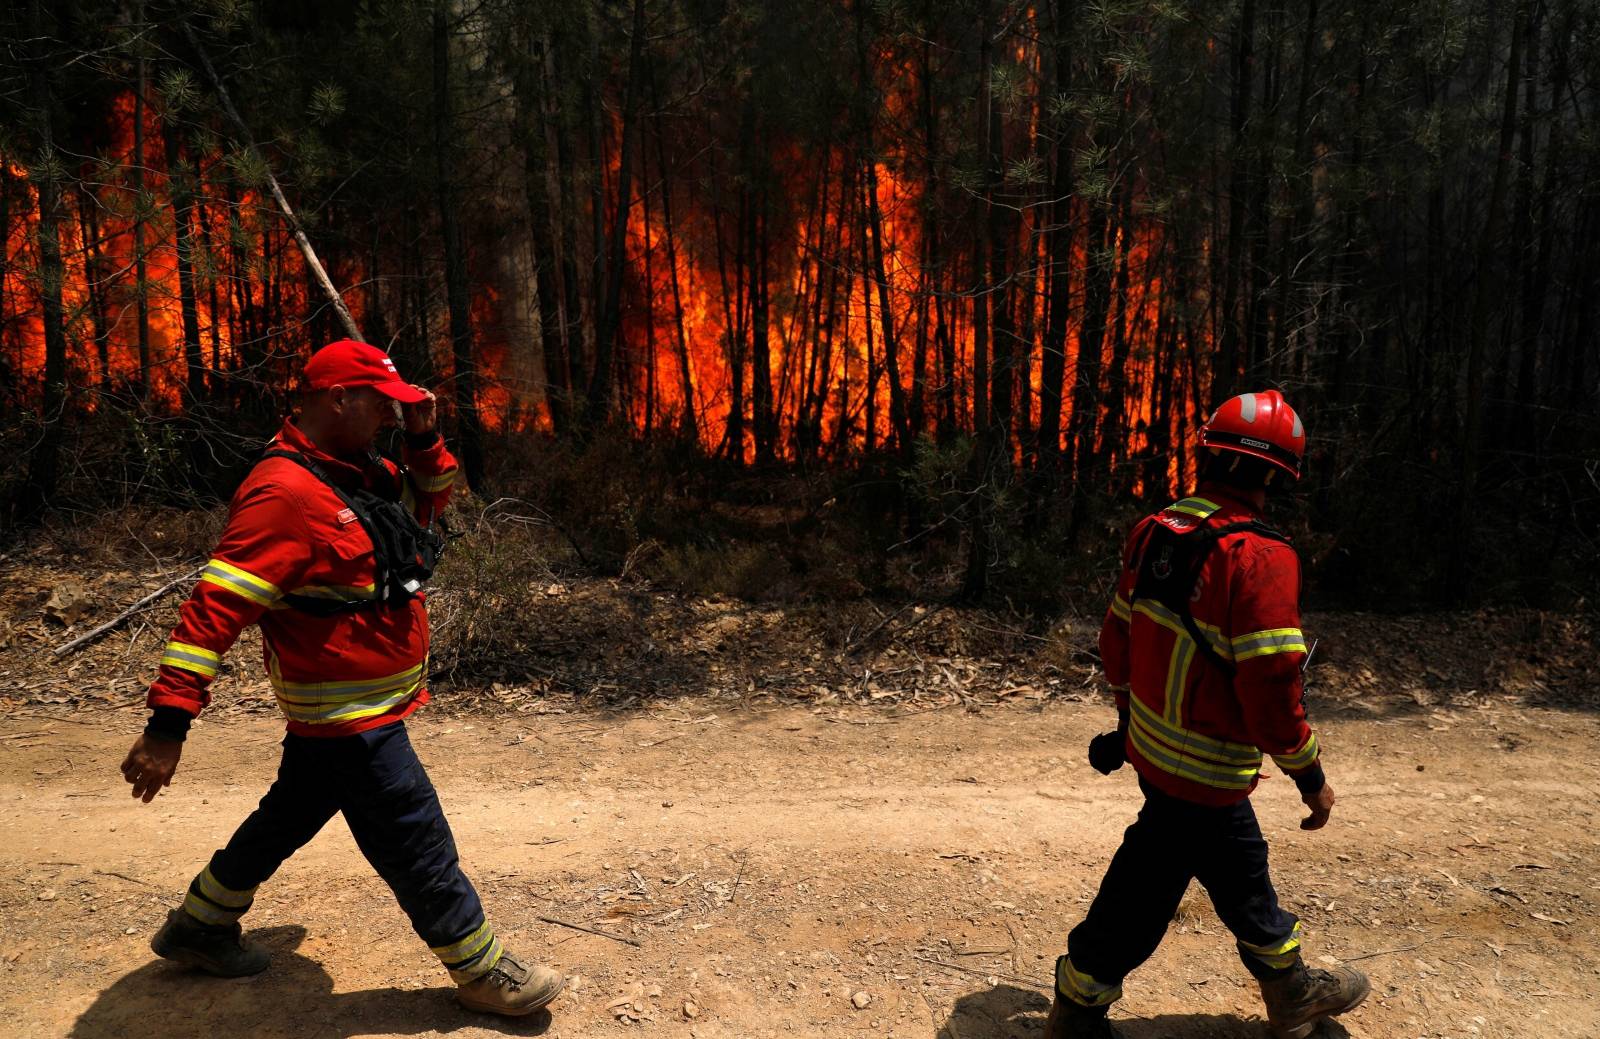 Firefighters pass near a forest fire near Macao